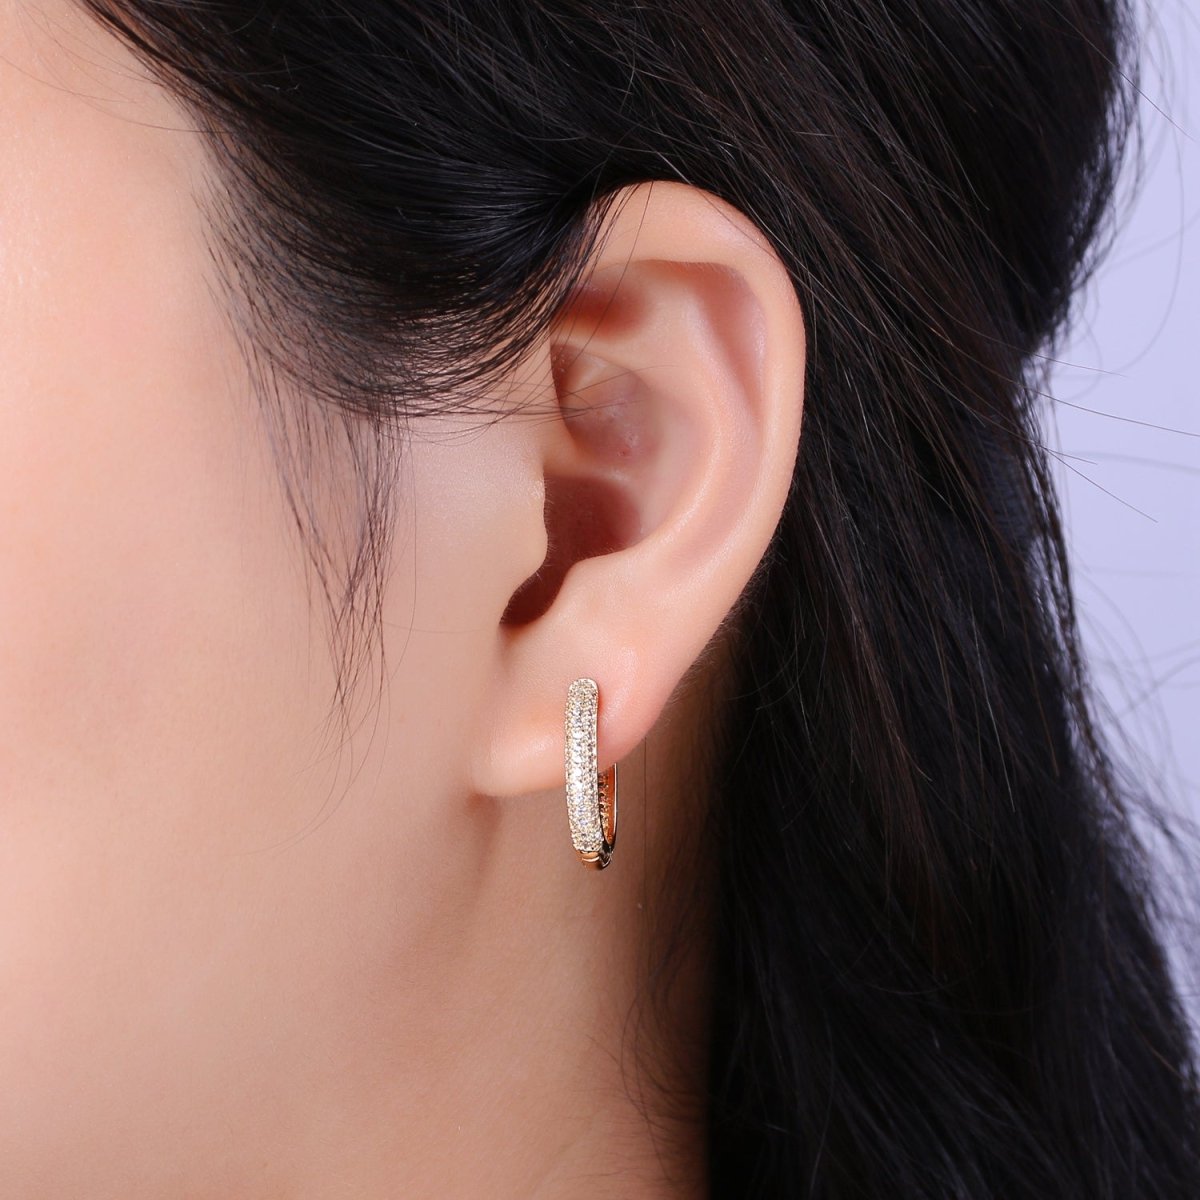 Small Oblong CZ Hoop Earrings Hypoallergenic 18K Gold Filled Huggie Hoop Earrings for Women | T-201 - DLUXCA